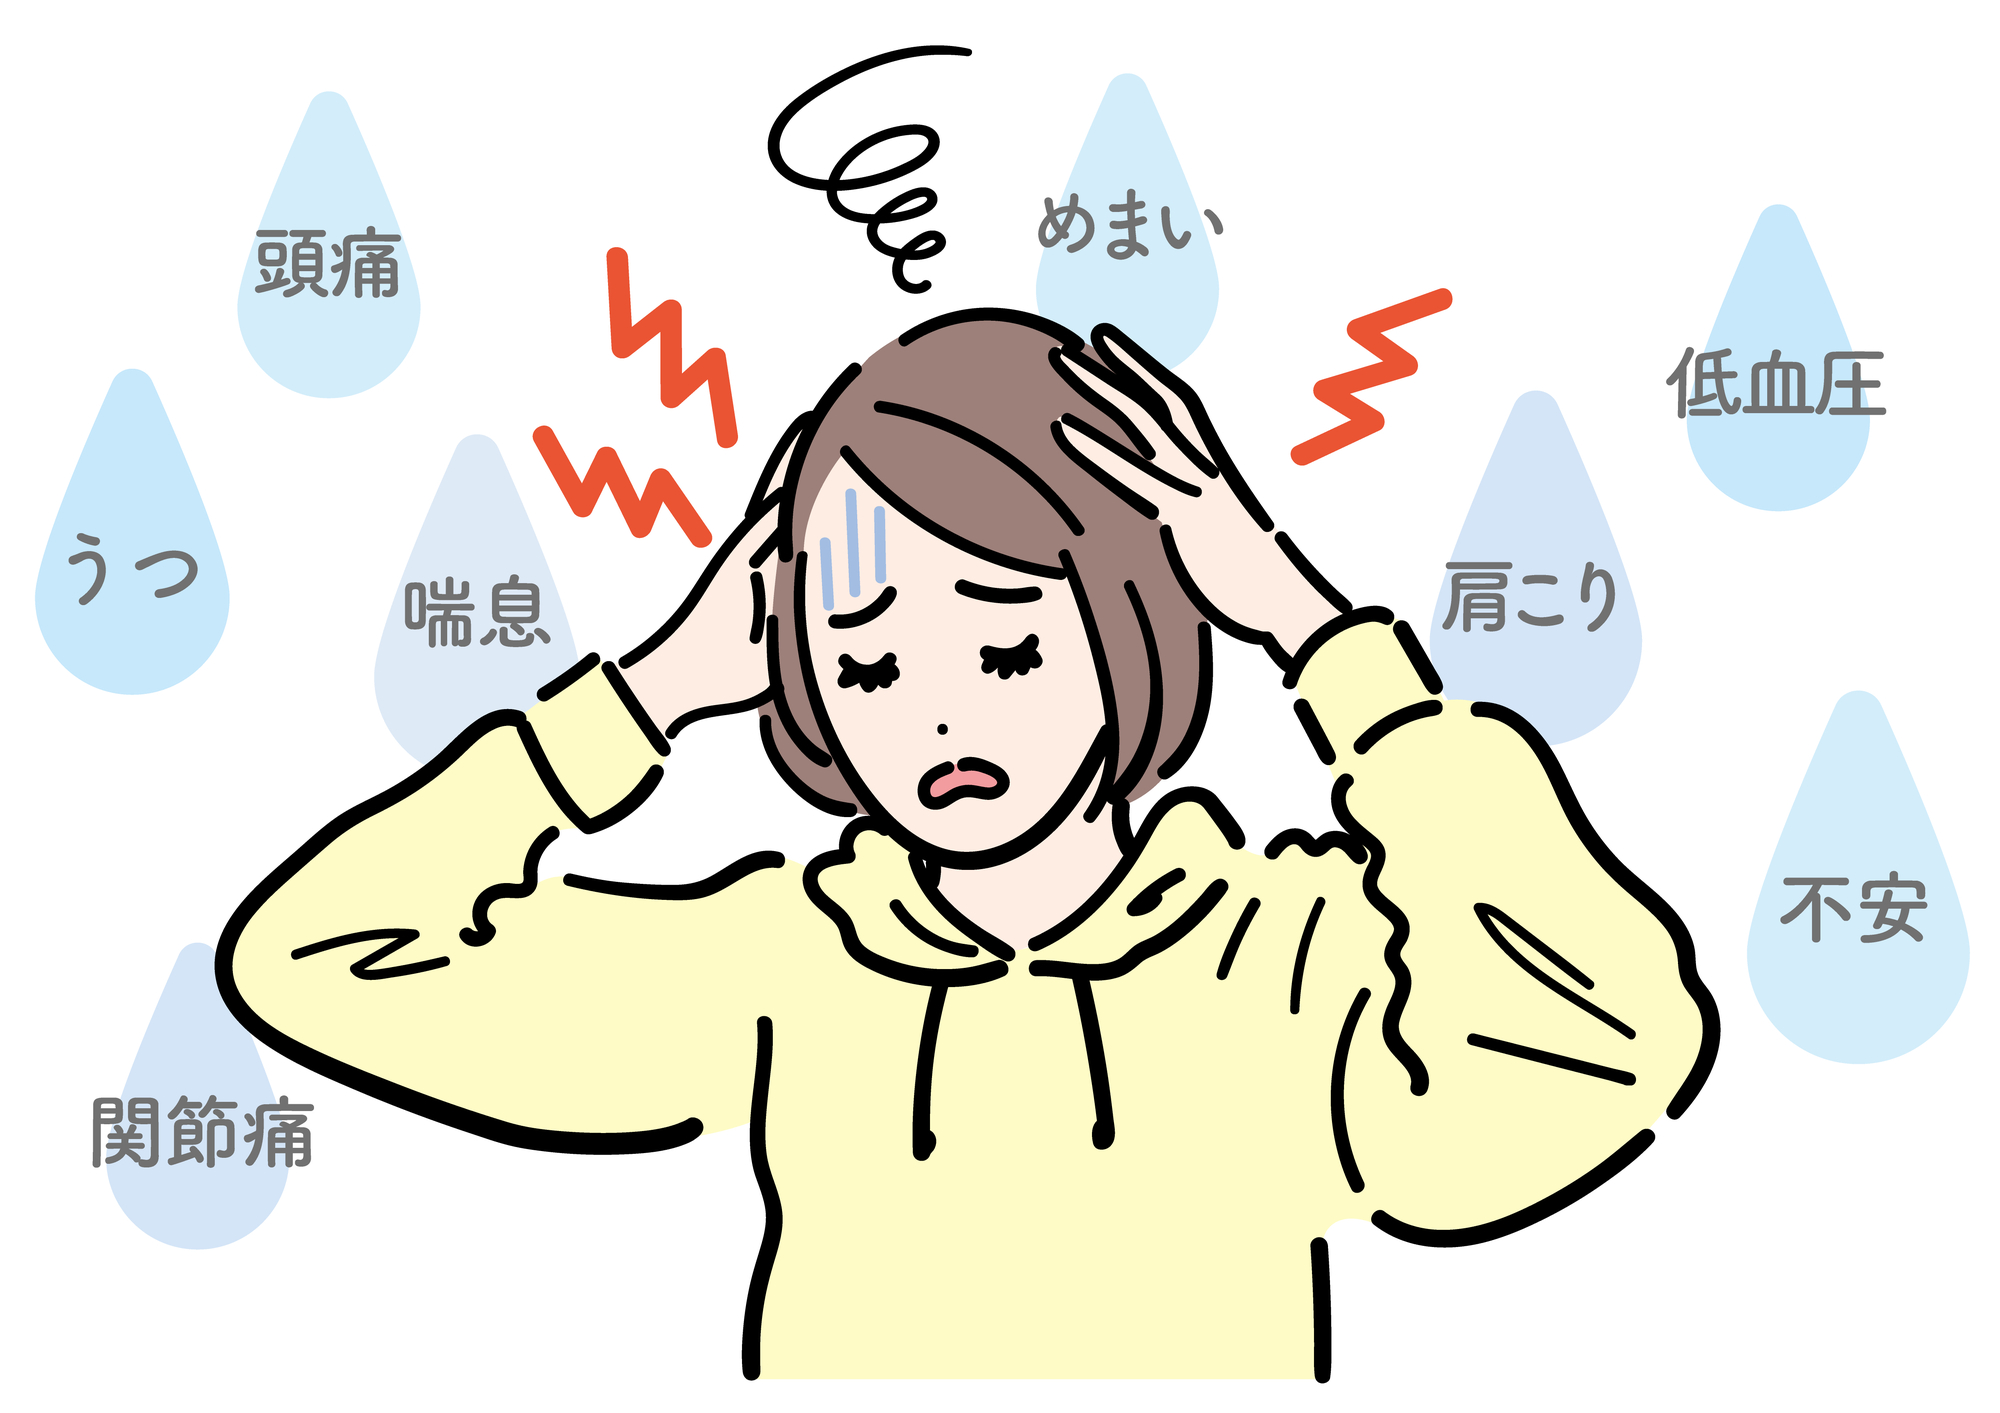 気圧の変動で頭痛、めまい、耳鳴り、肩こり、倦怠（けんたい）感、気管支ぜんそく、うつなど、様々な症状が現れる